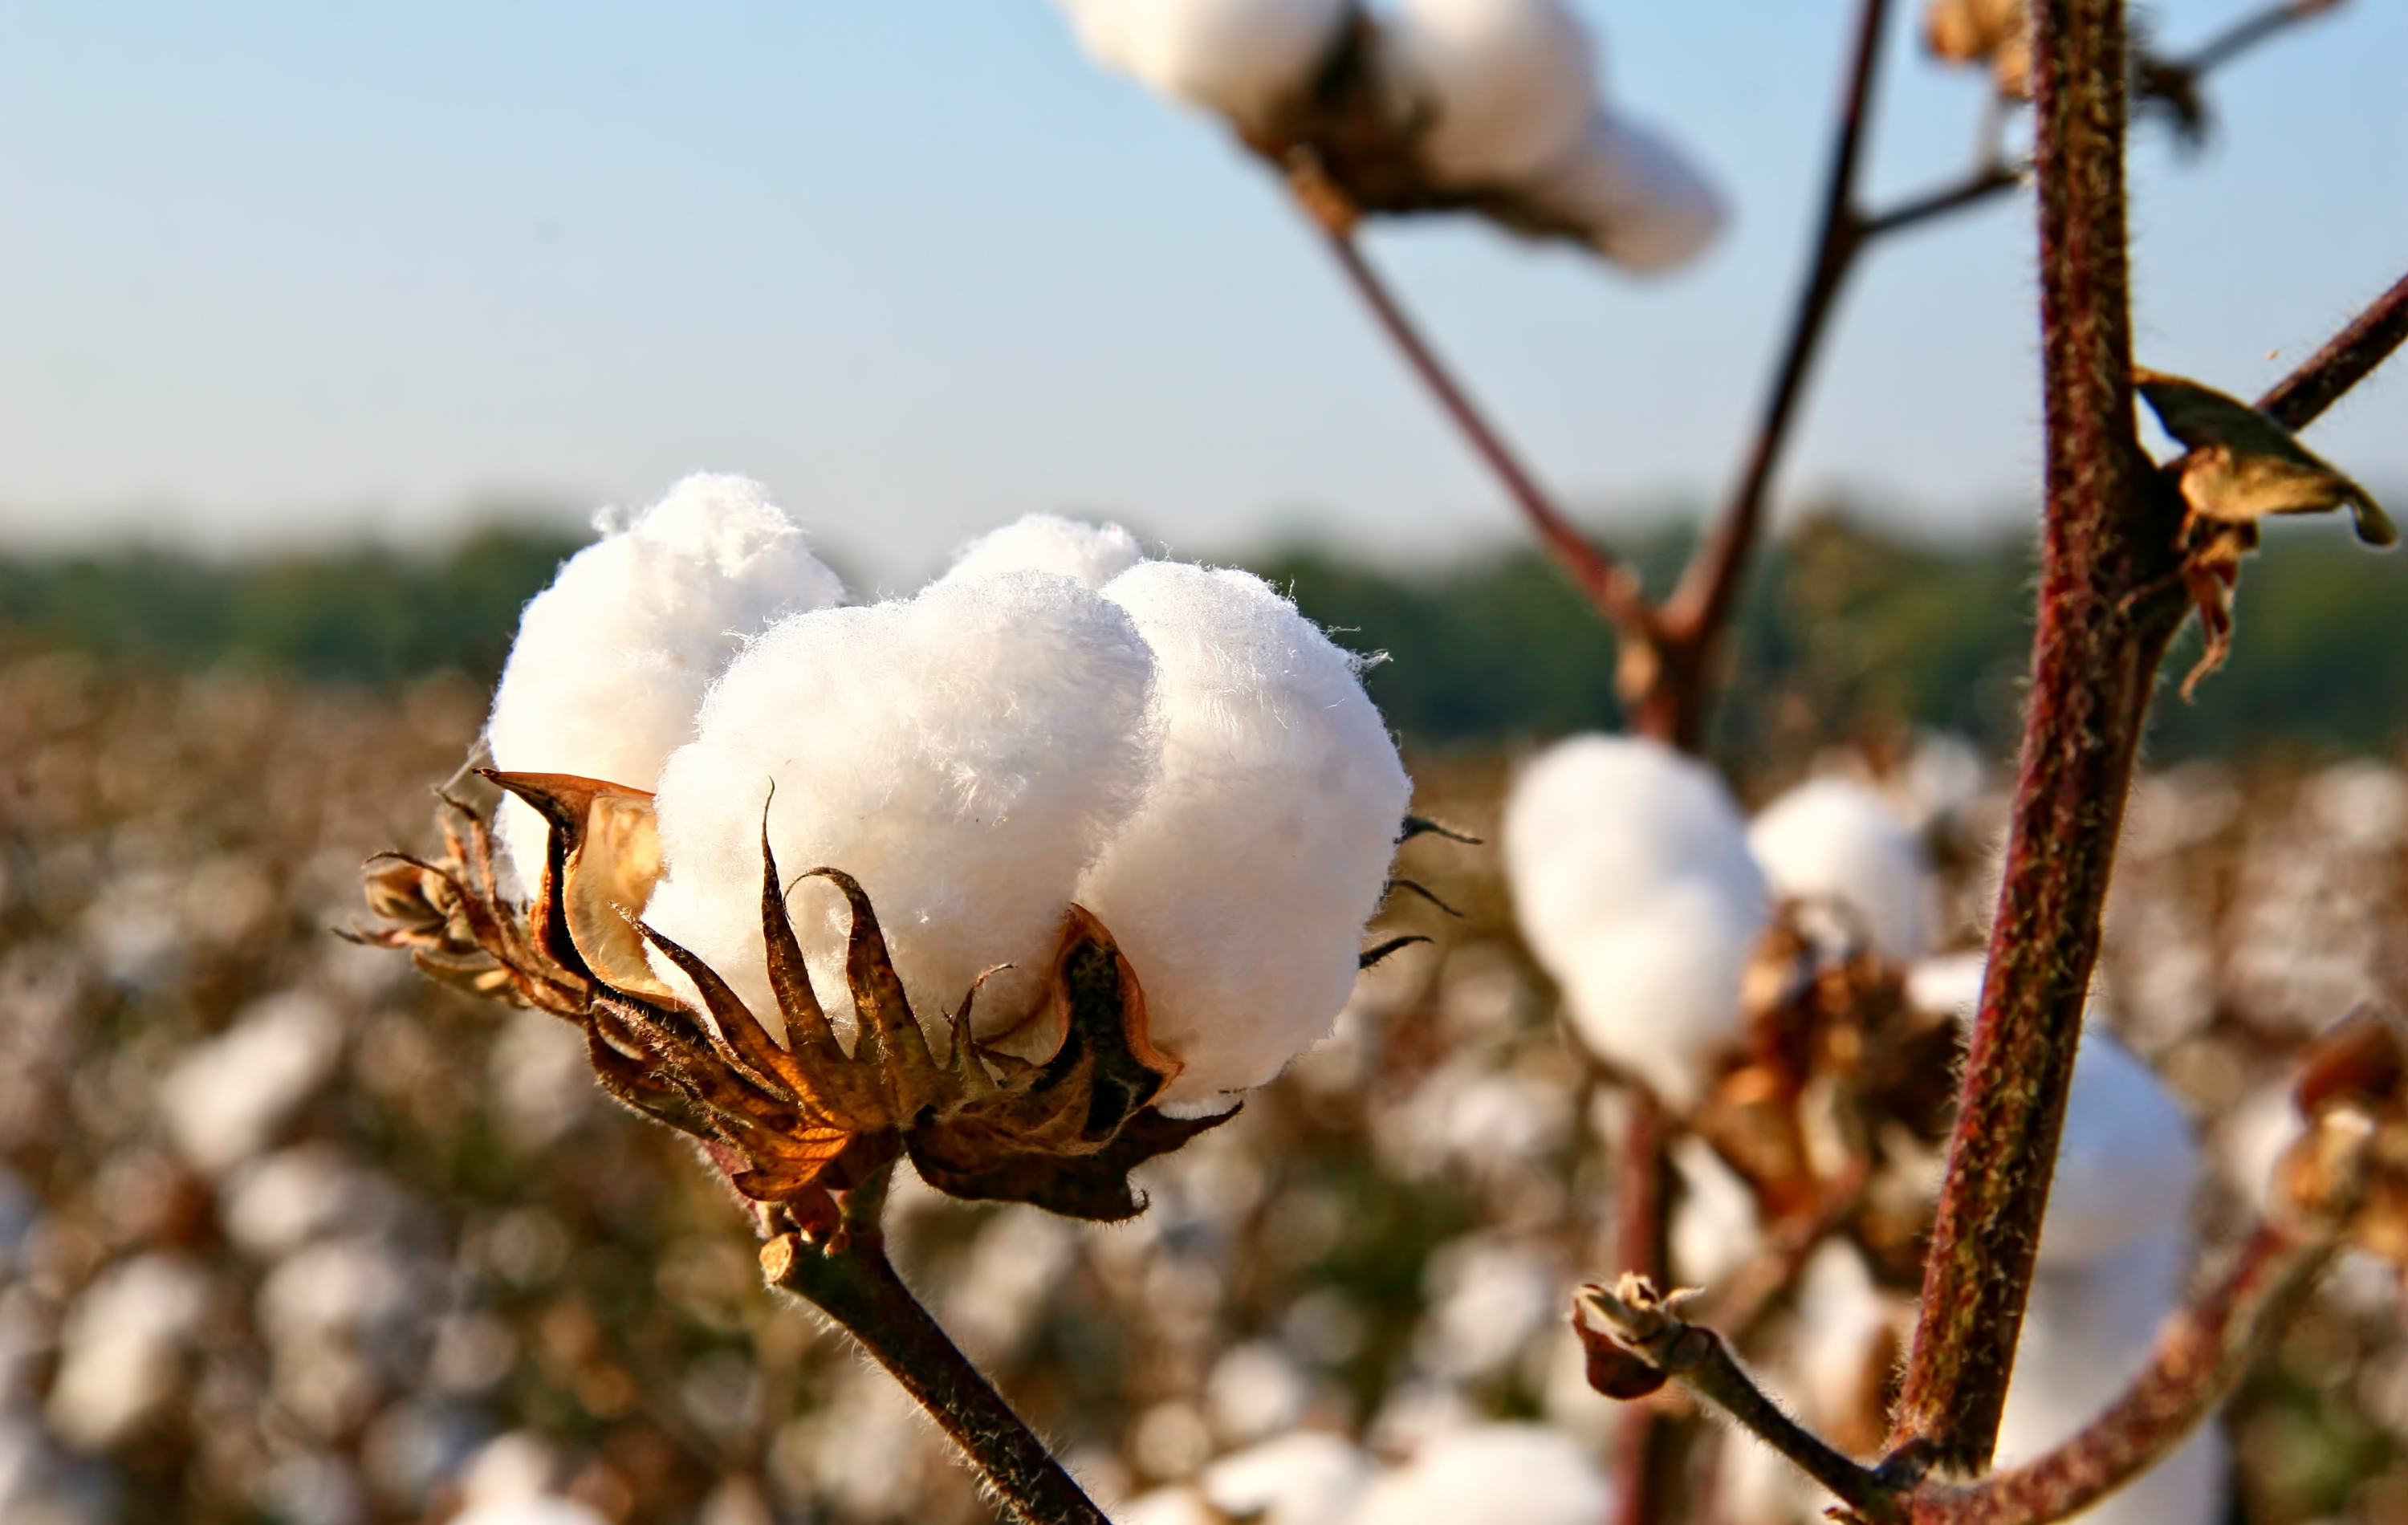 Coton bio, coton recyclé et coton conventionnel - Dream Act